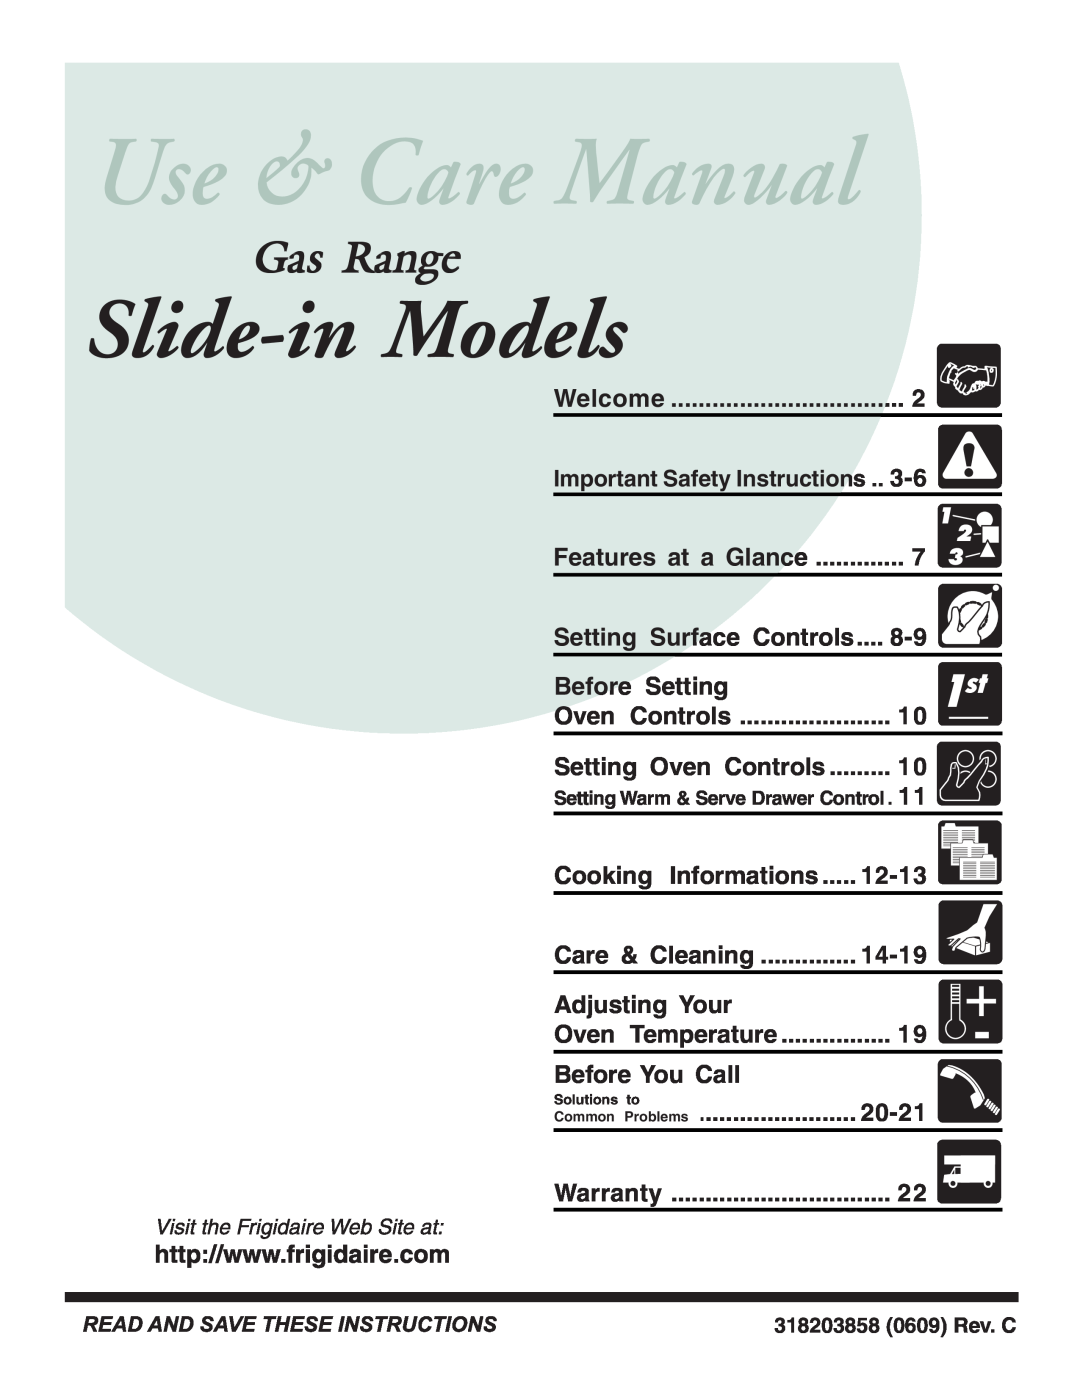 Frigidaire 318203858 warranty Slide-in Models, Gas Range 